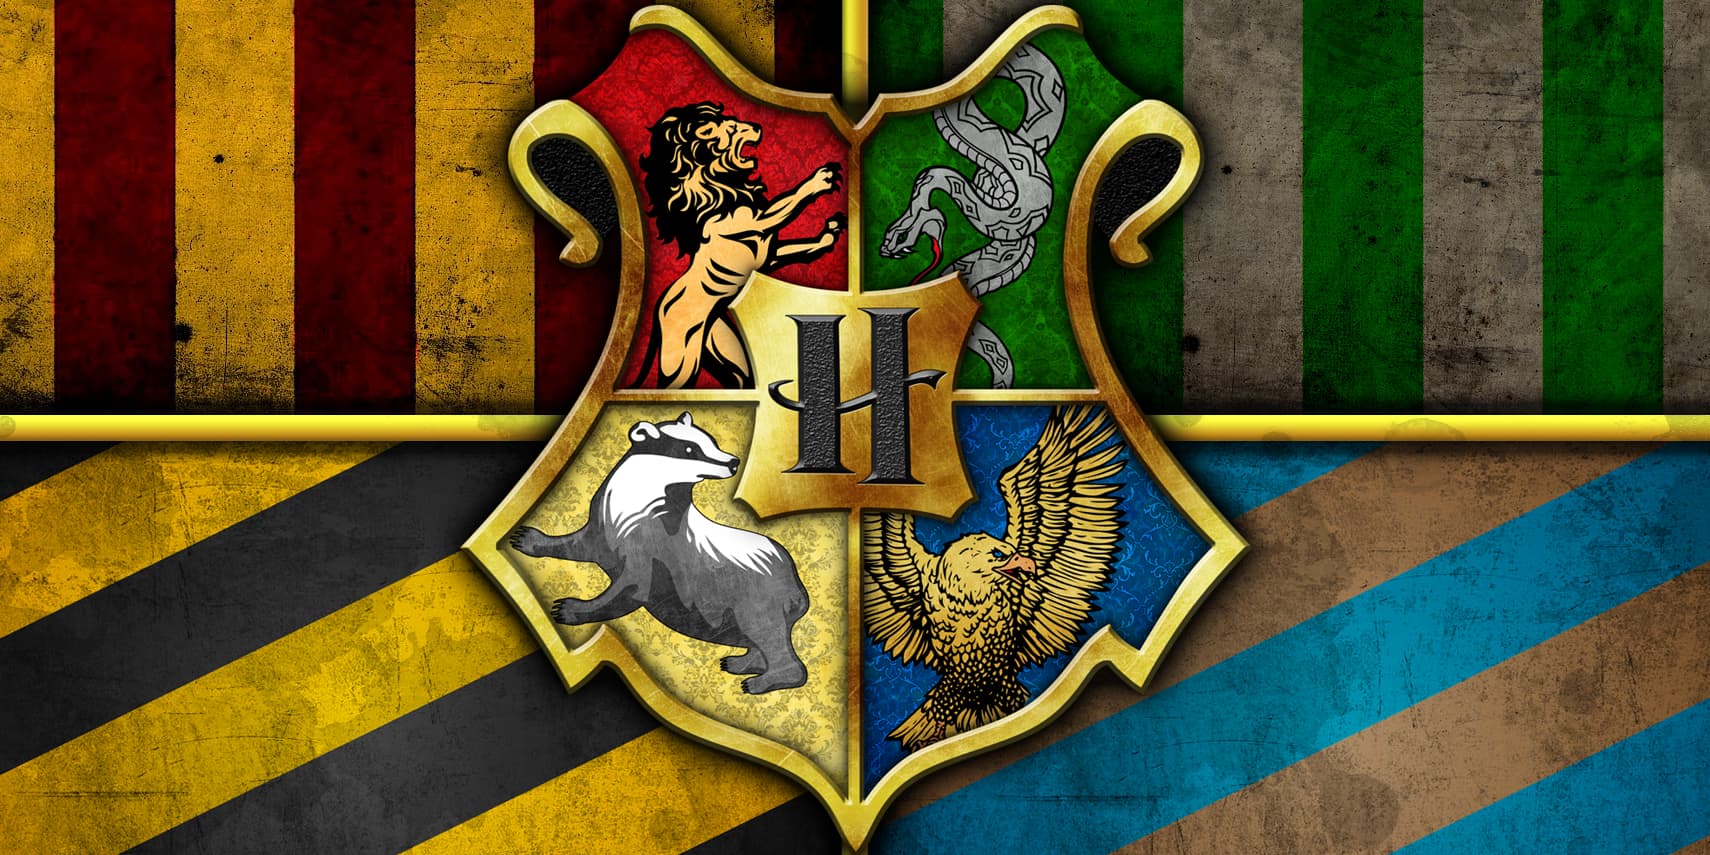 El significado oculto tras los colores de cada una de las casas de Hogwarts  | Ocio y cultura | Cadena SER